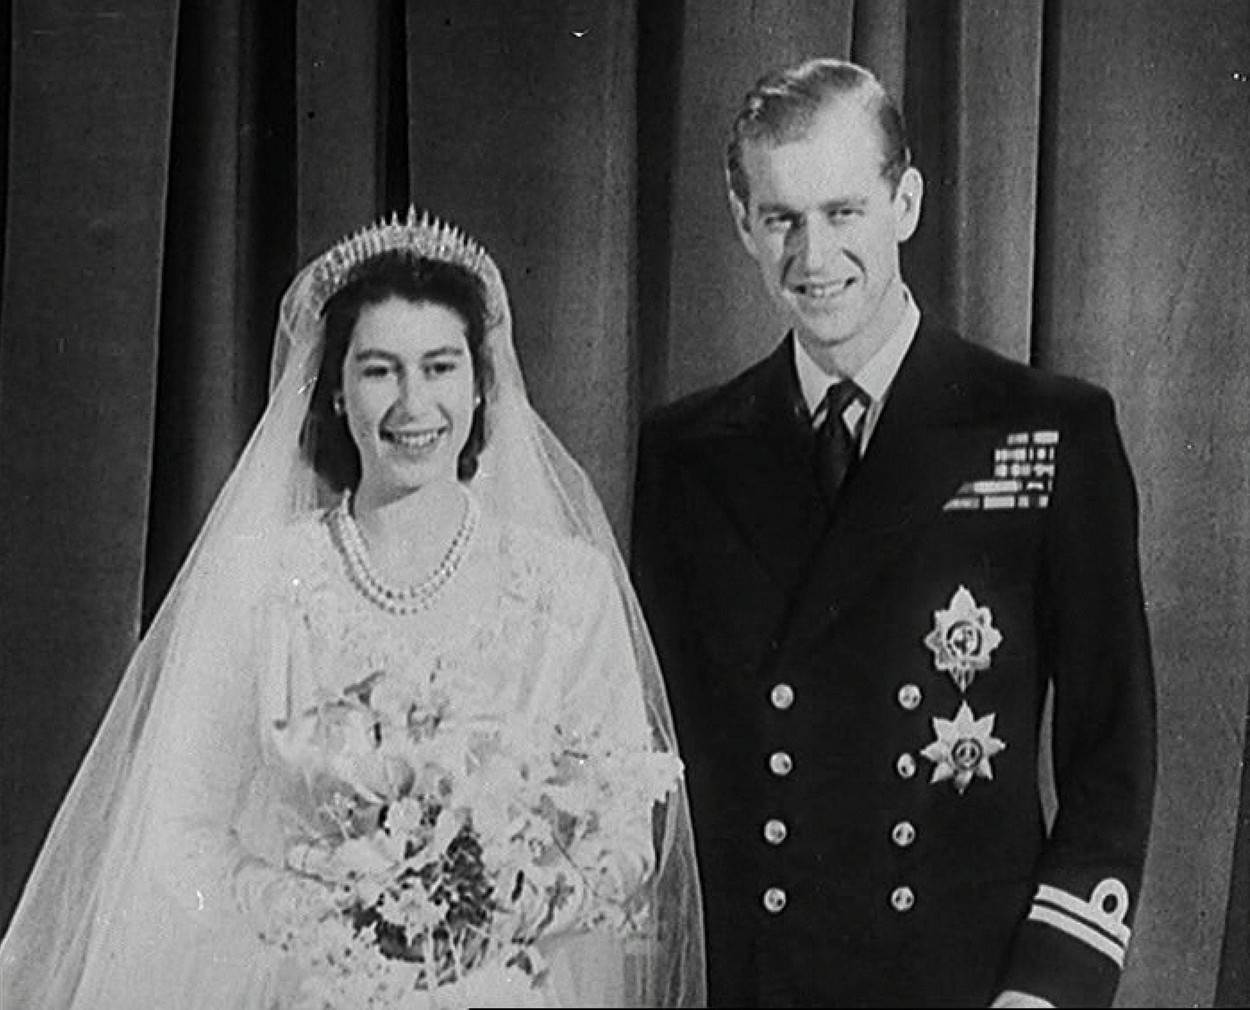 Kralj George VI nije bio oduševljen kada se Elizabeta ll odlučila udati za princa Philipa